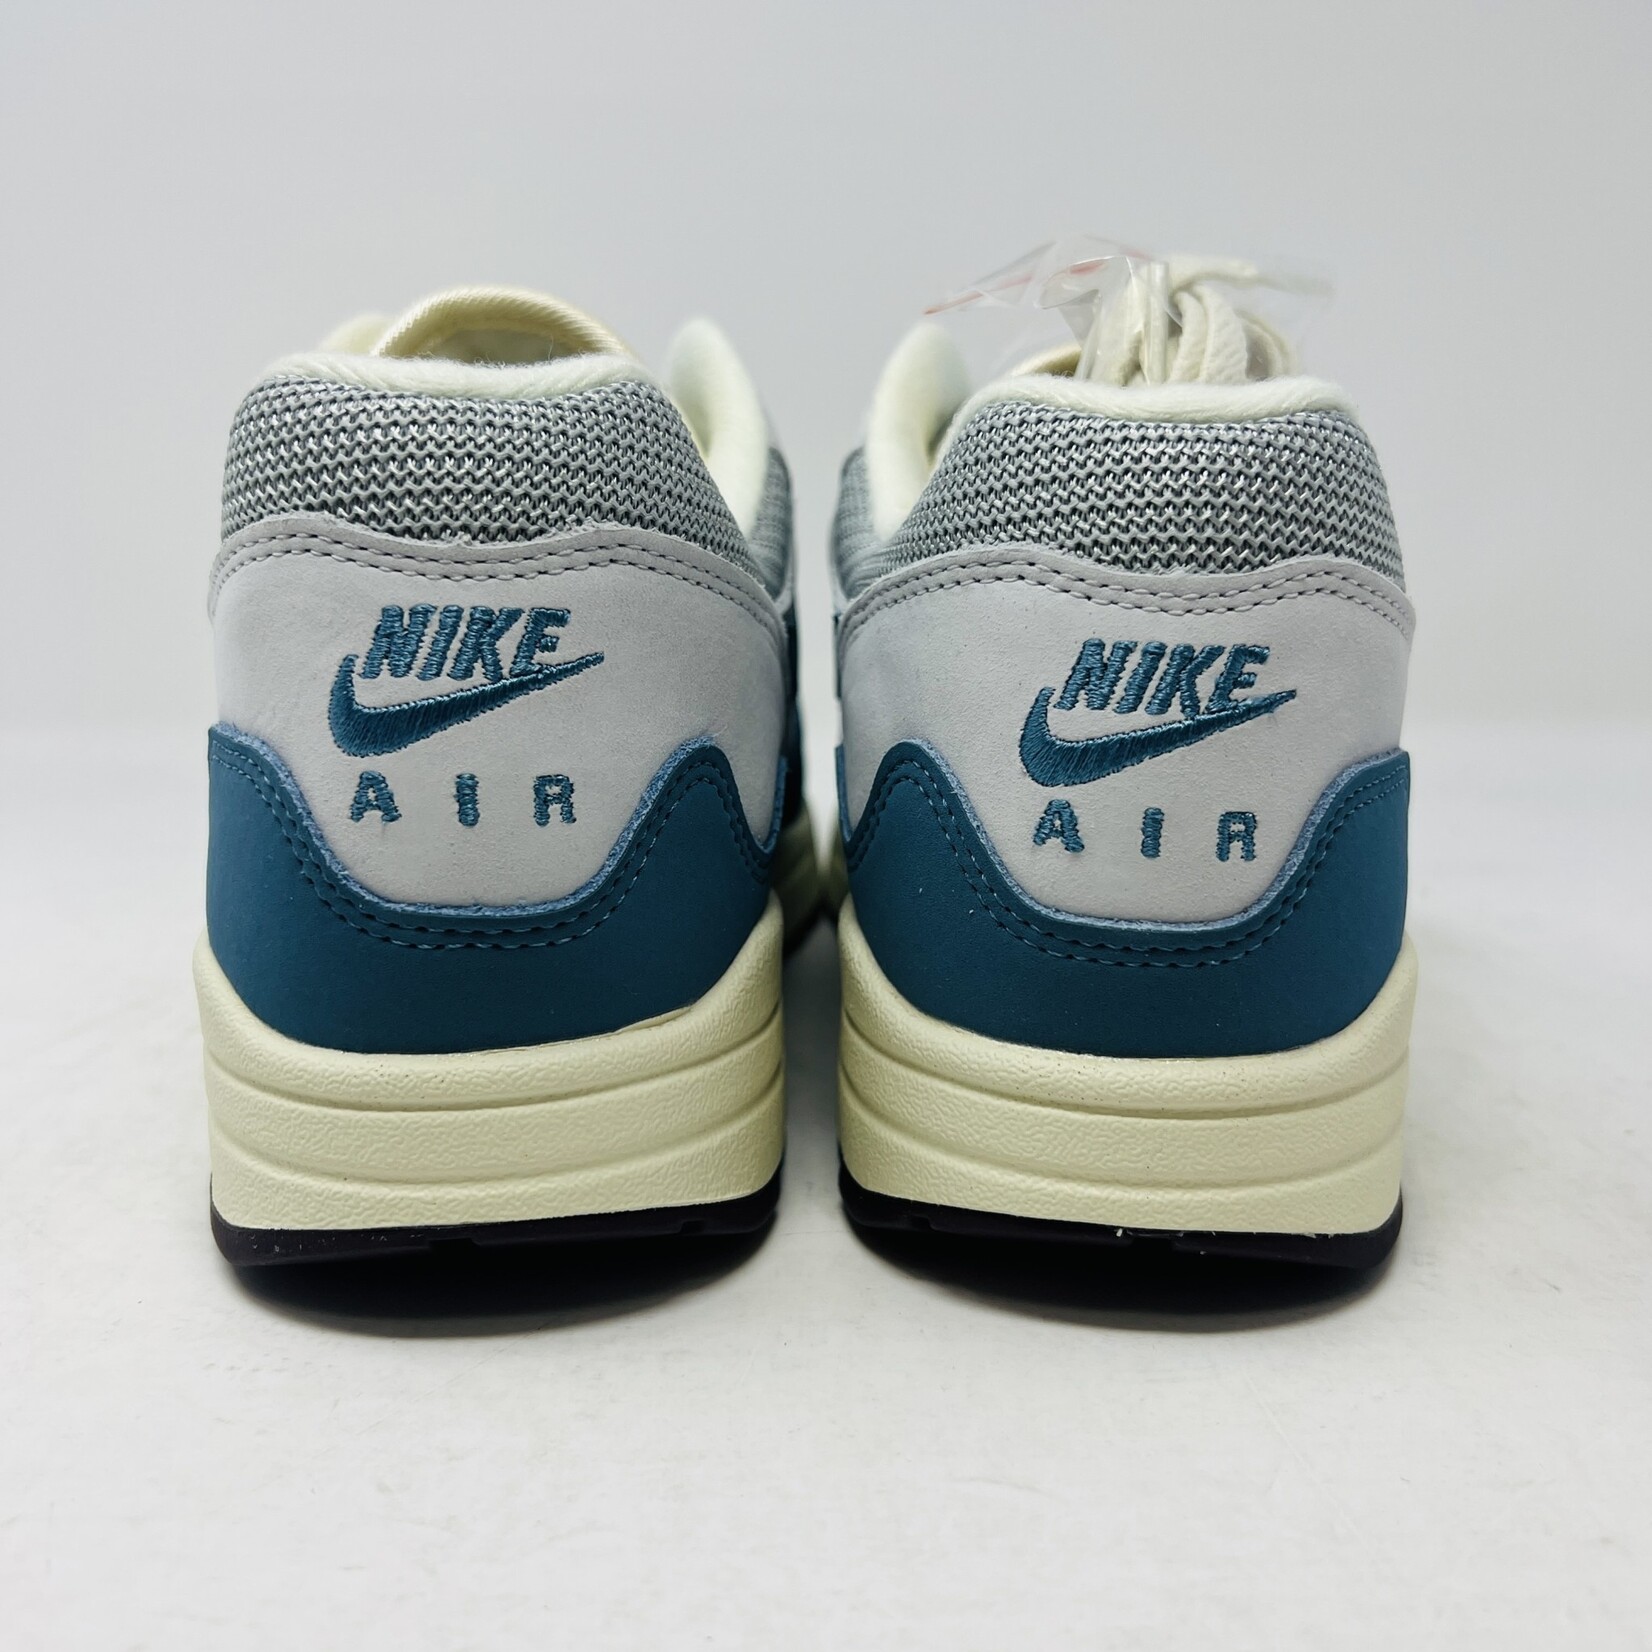 Nike Nike Air Max 1 Patta Waves Noise Aqua